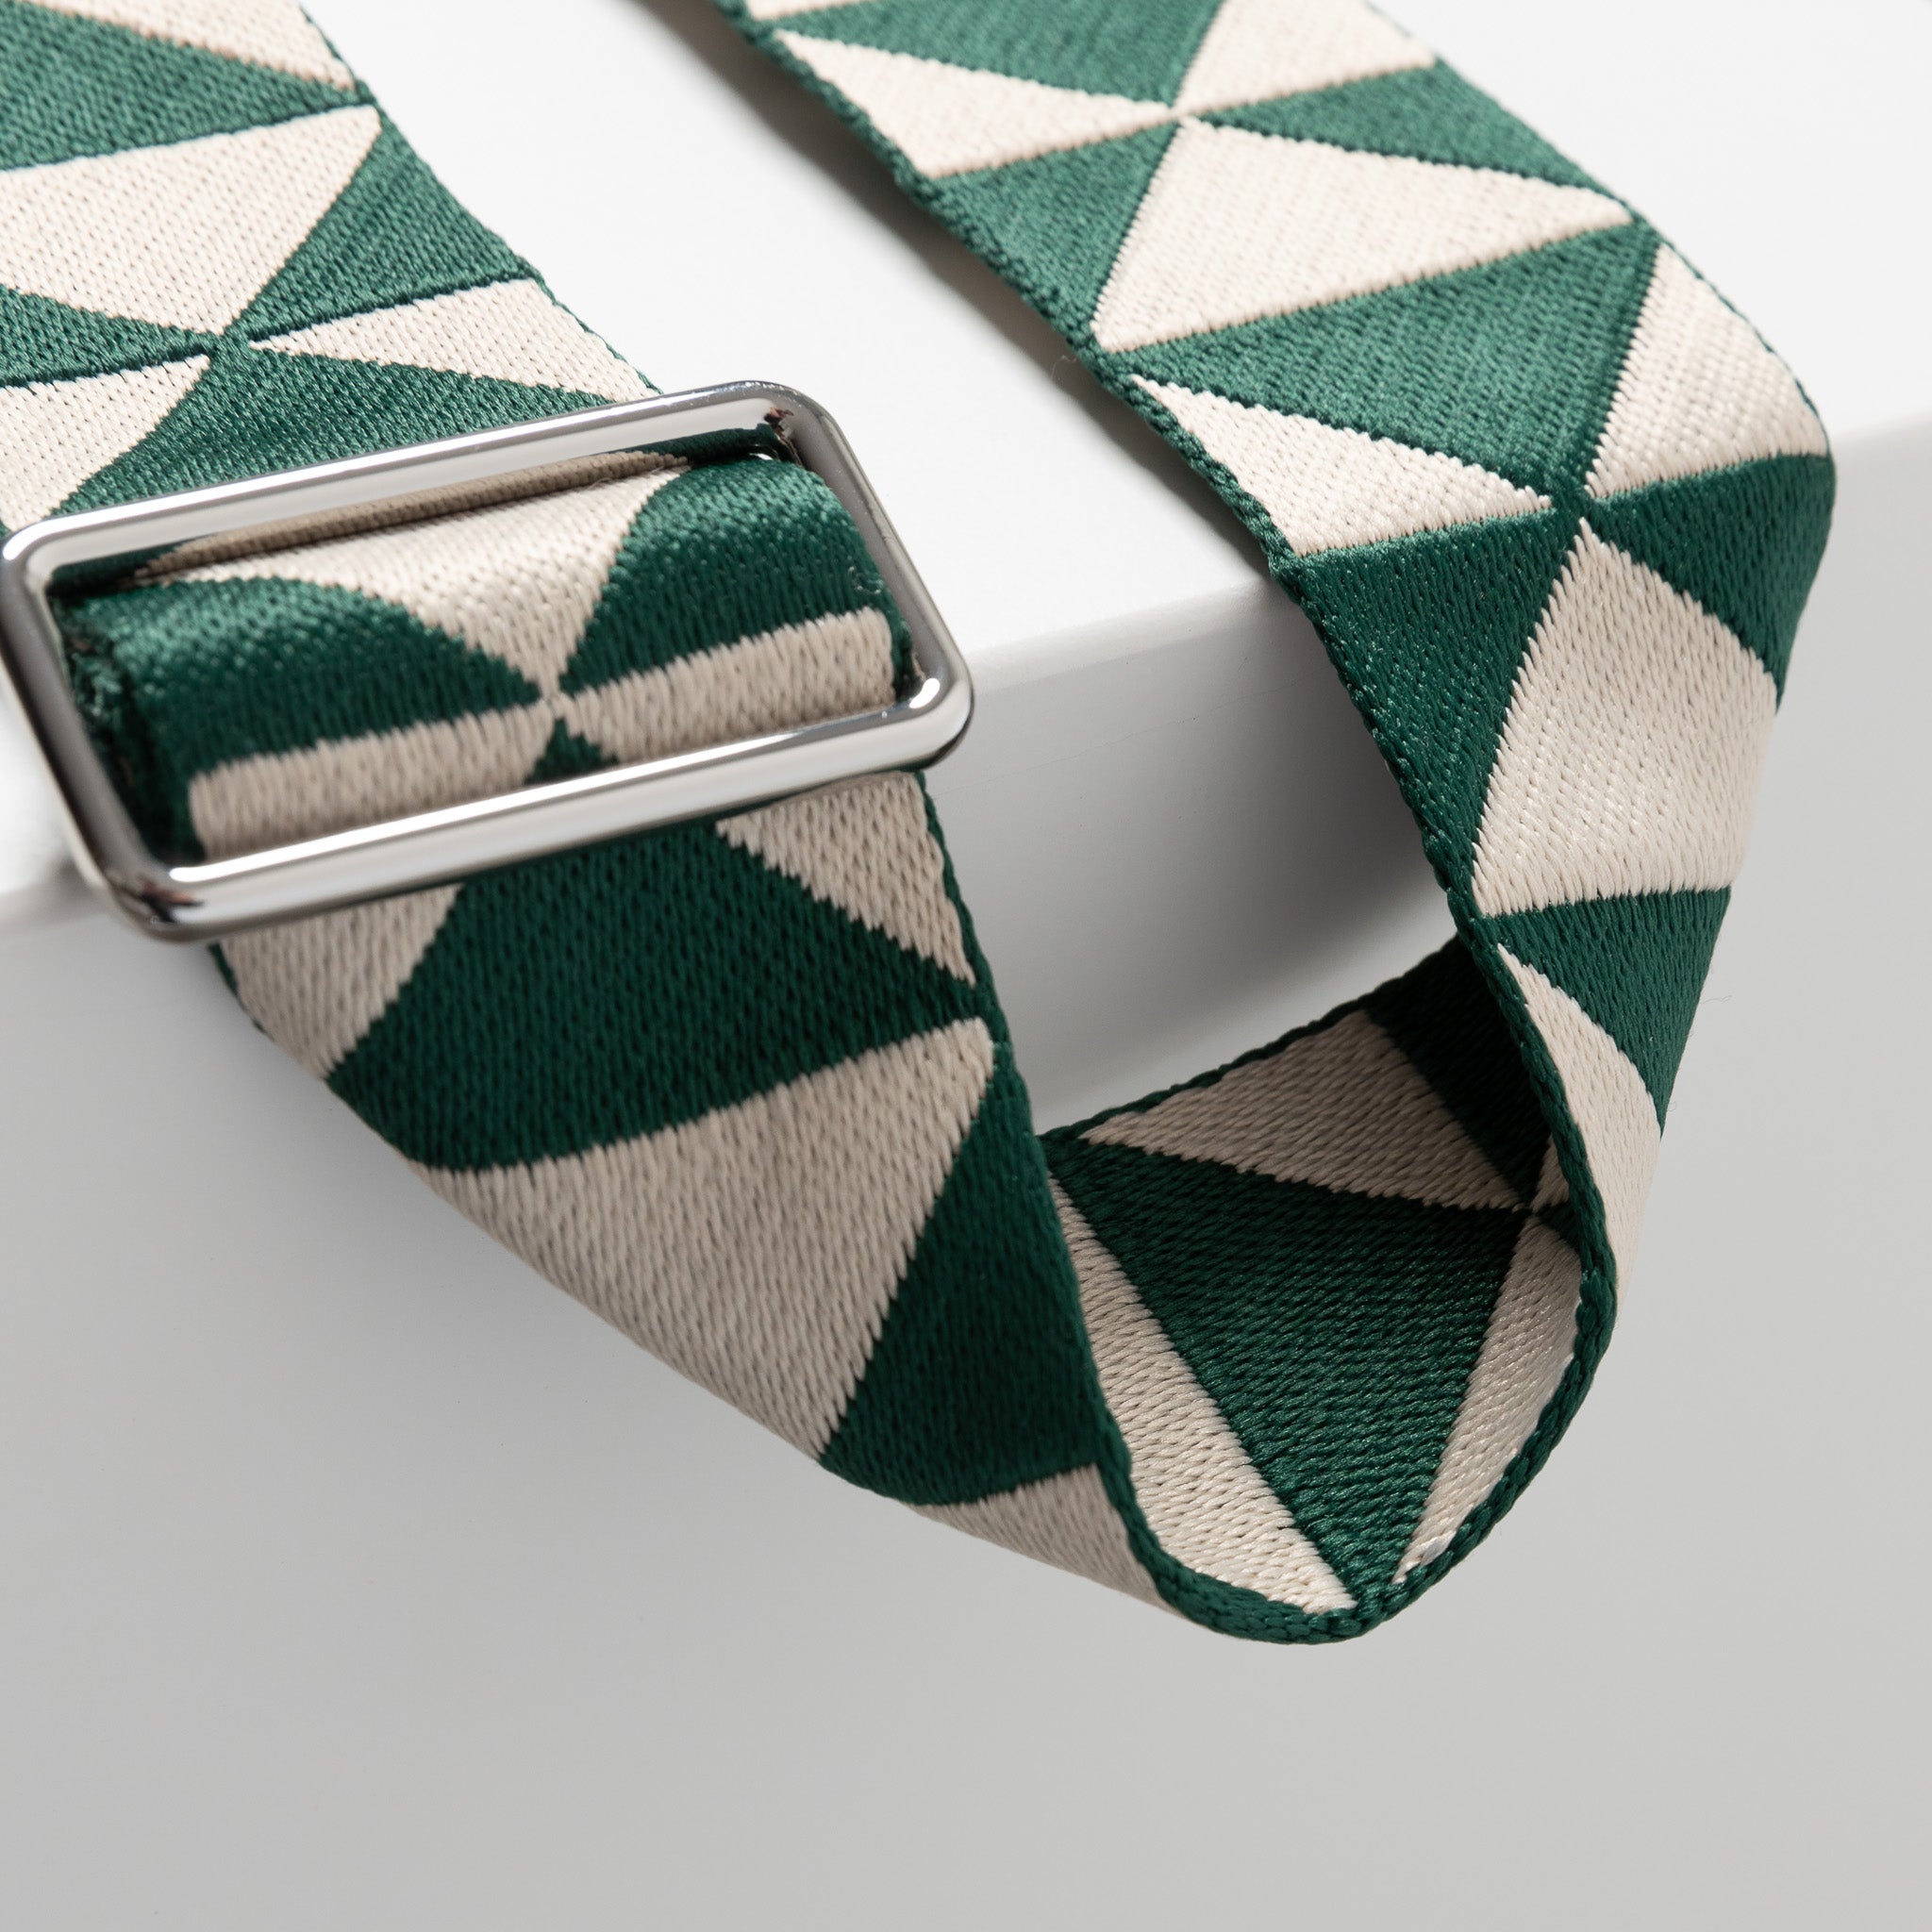 strap triangles green/sand - navy - VIVI MARI